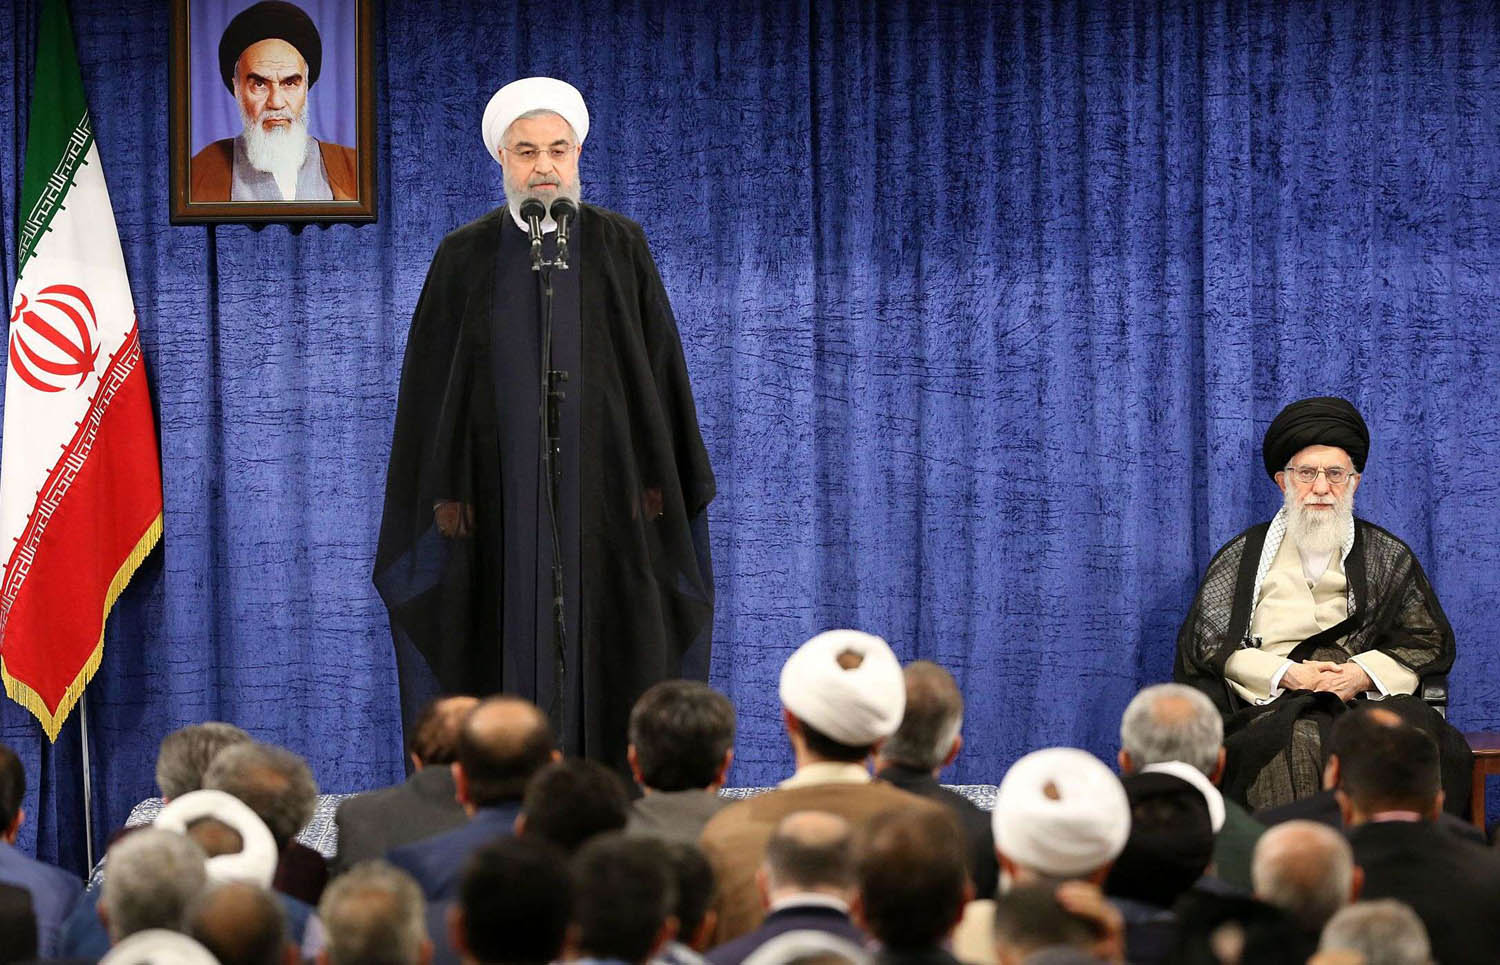 المرشد الأعلى خامنئي يستمع إلى كلمة للرئيس الإيراني روحاني